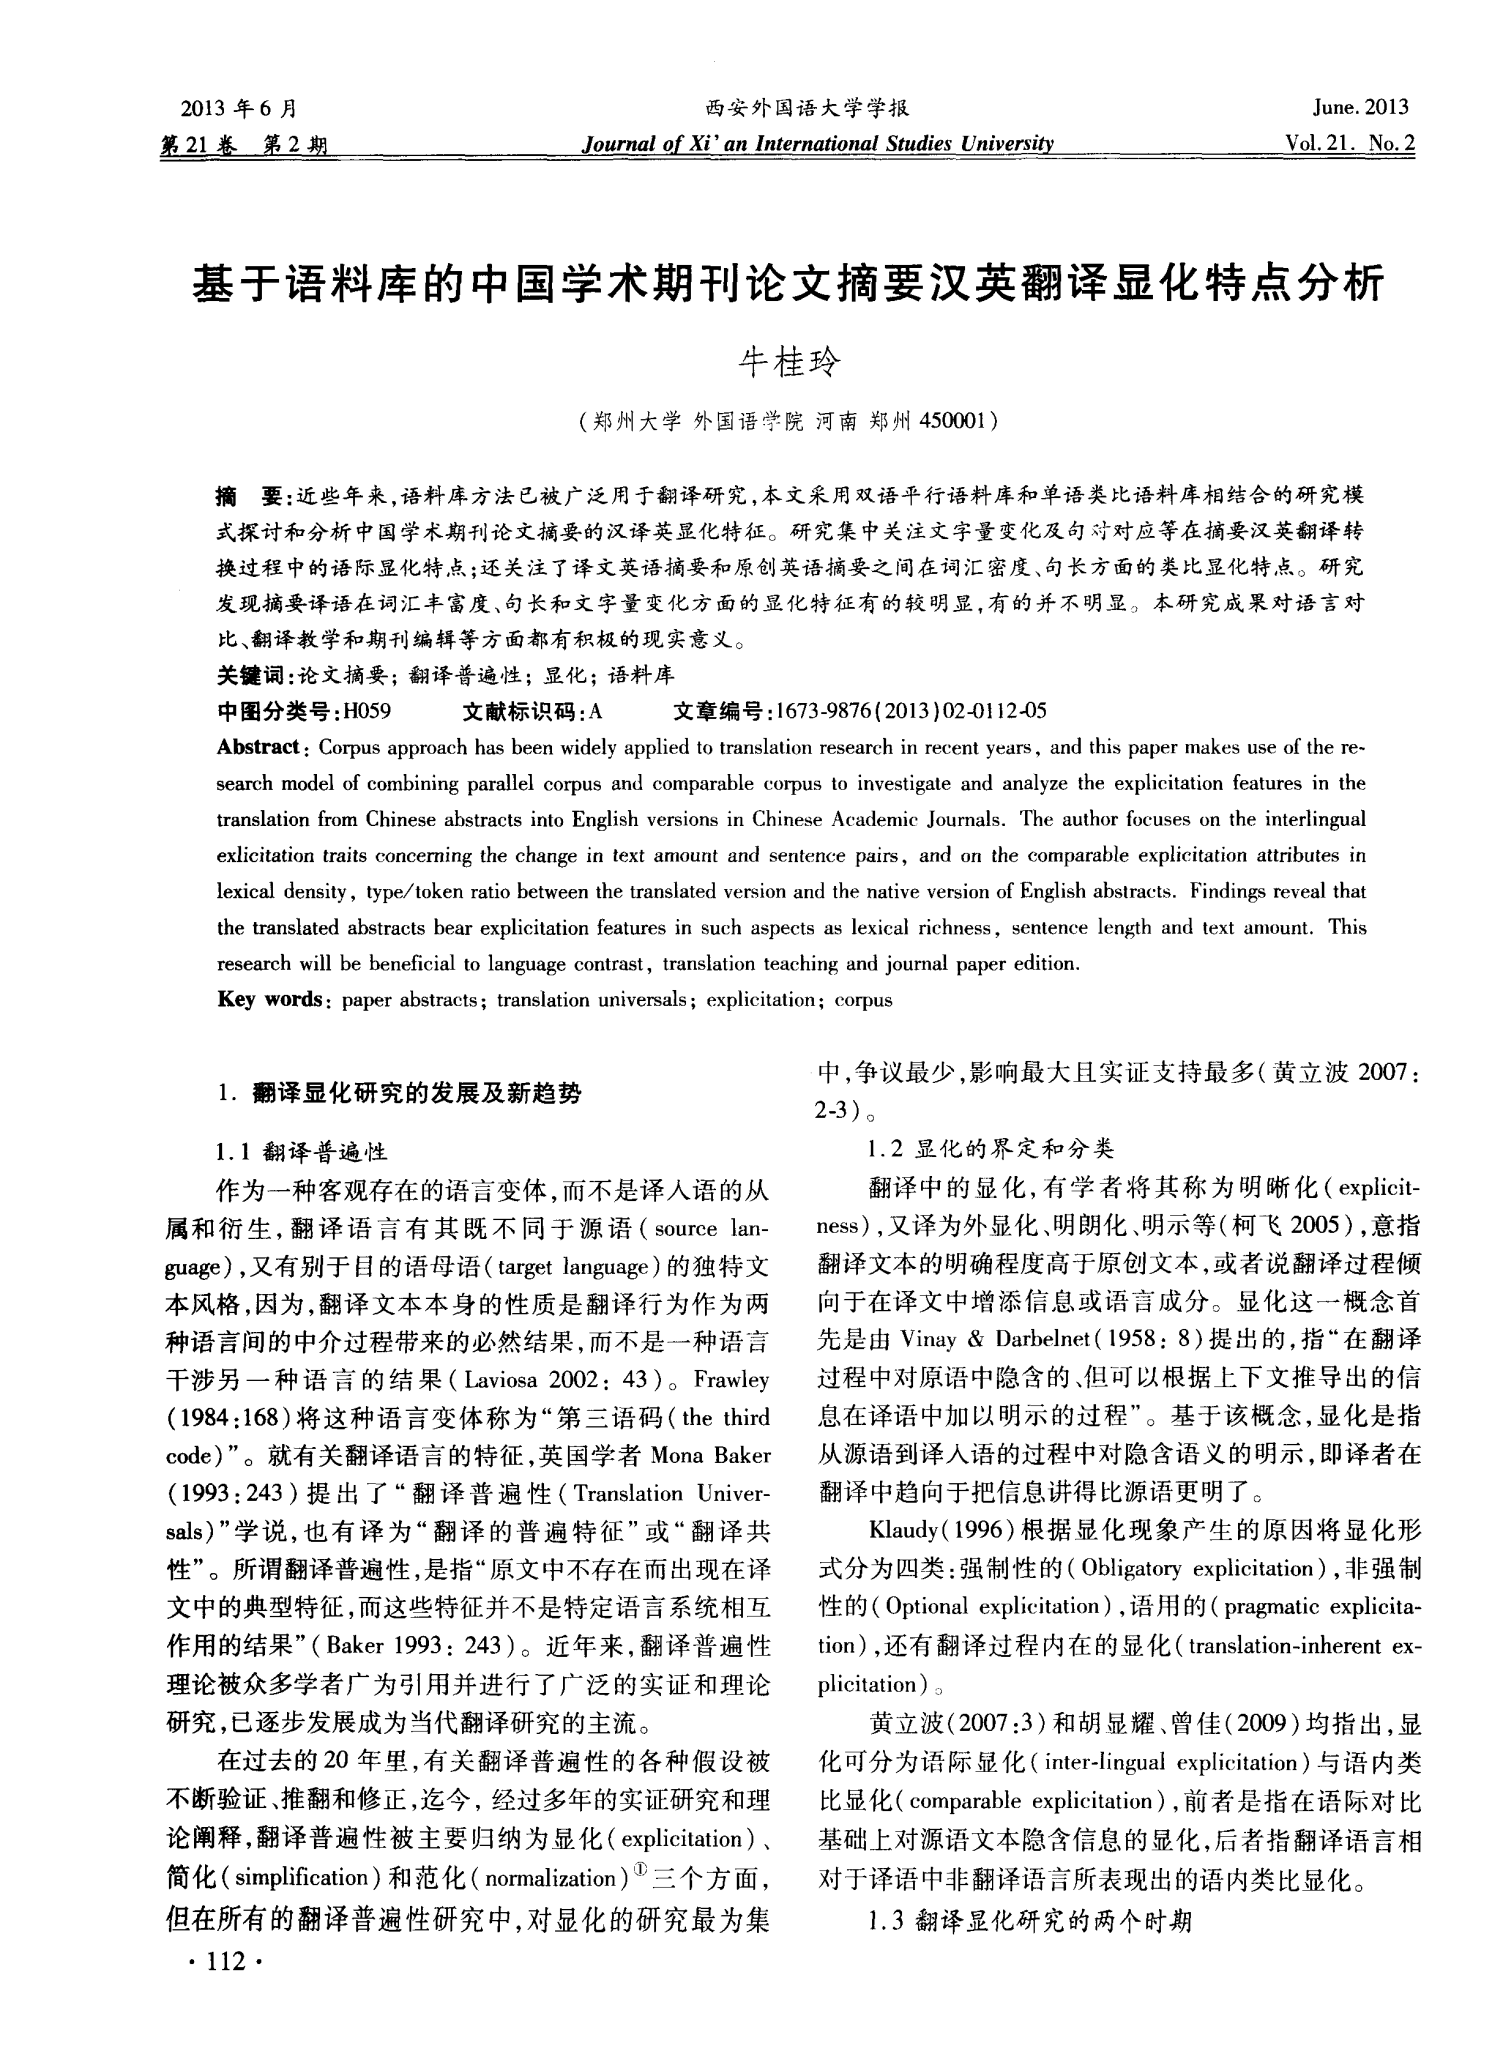 基于语料库的中国学术期刊论文摘要汉英翻译显化特点分析